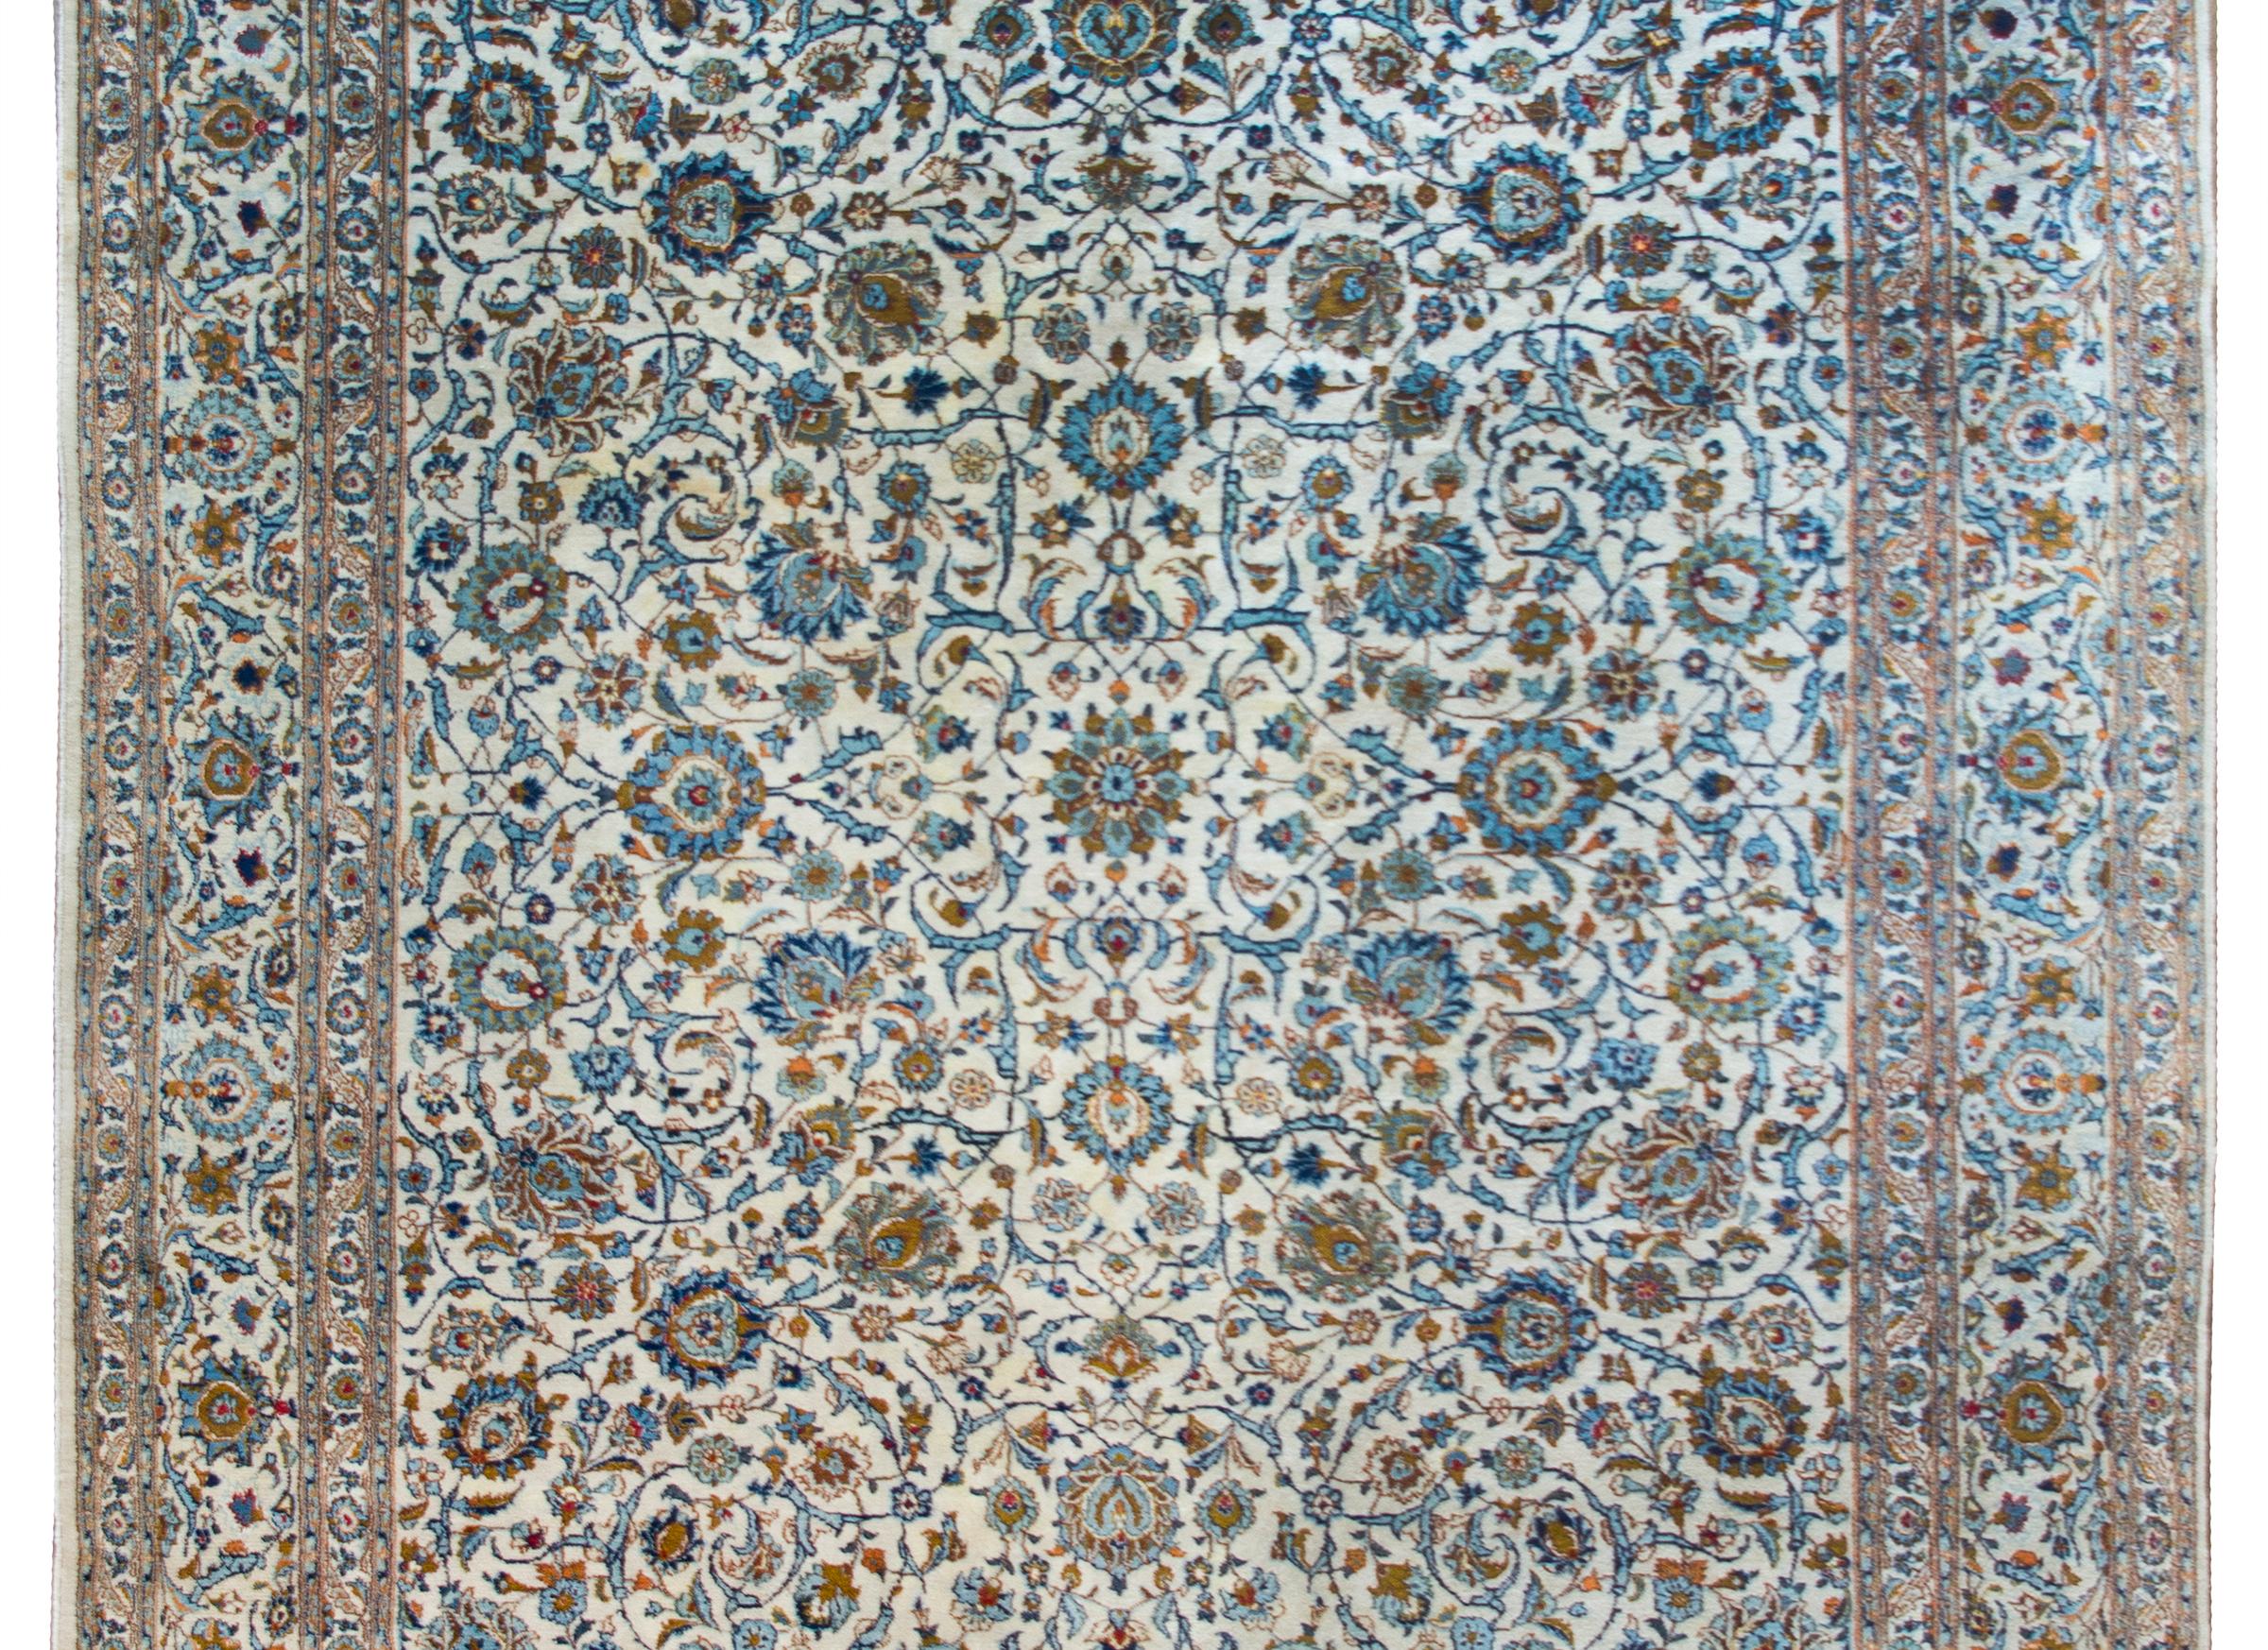 Magnifique tapis persan du Kashan du milieu du 20e siècle, avec un motif floral et de vigne en volutes sur tout le pourtour, avec une myriade de fleurs tissées en laine indigo clair et foncé, cramoisie et cuivrée, sur un fond crème, et entouré d'une